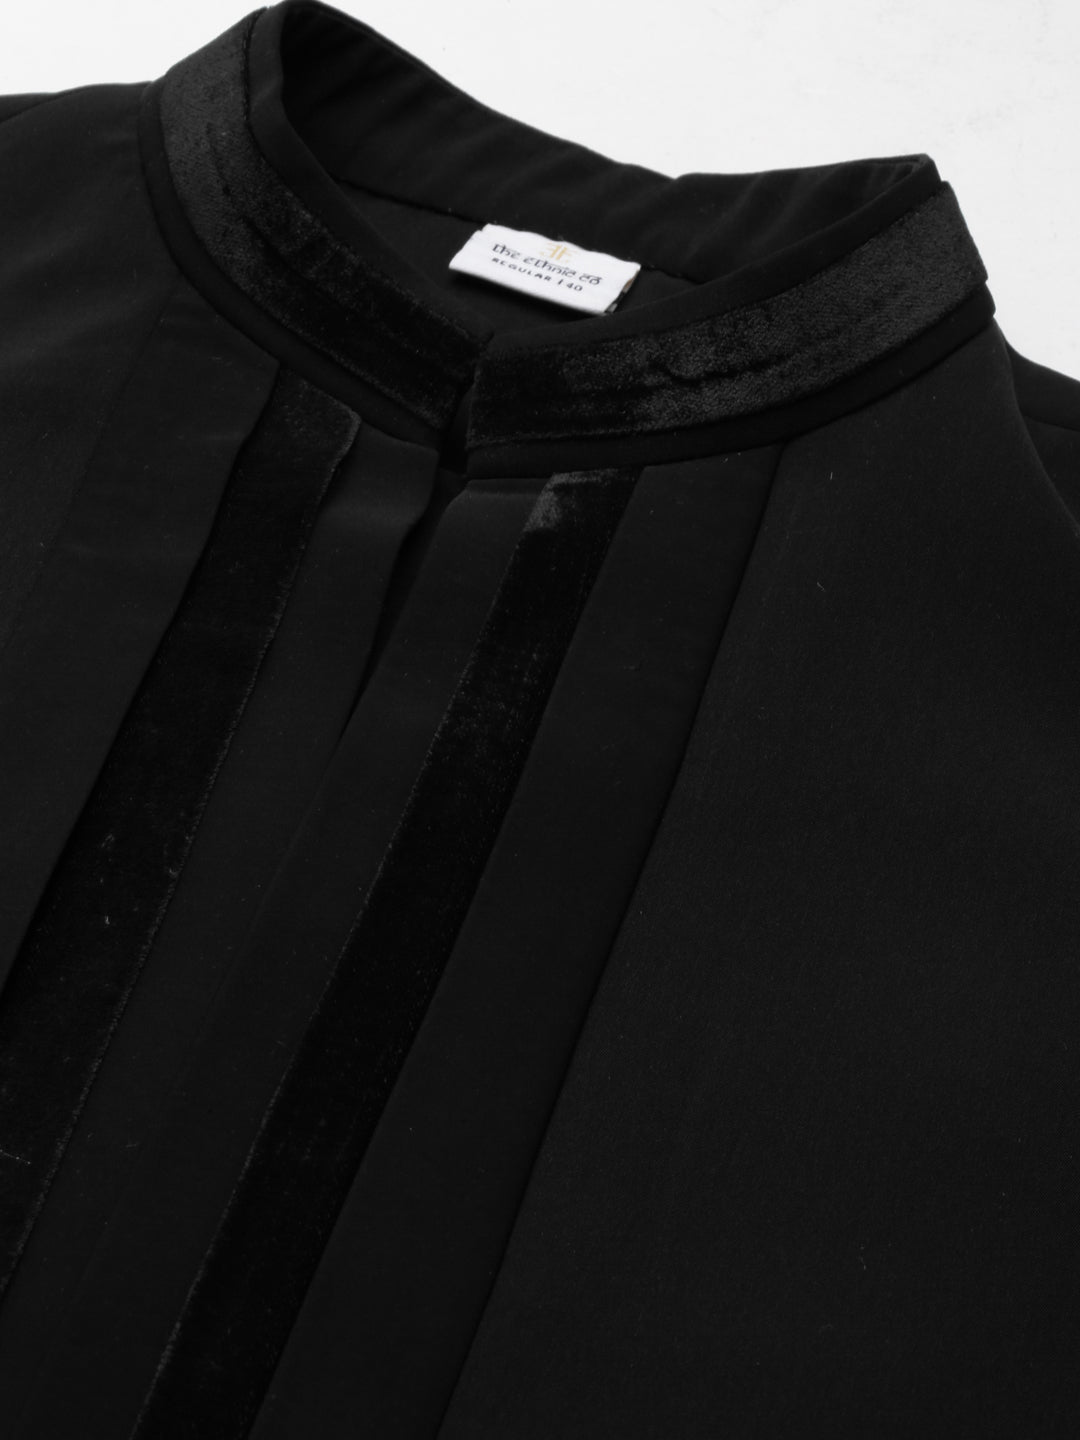 Black Pleated Jacket Kurta Set